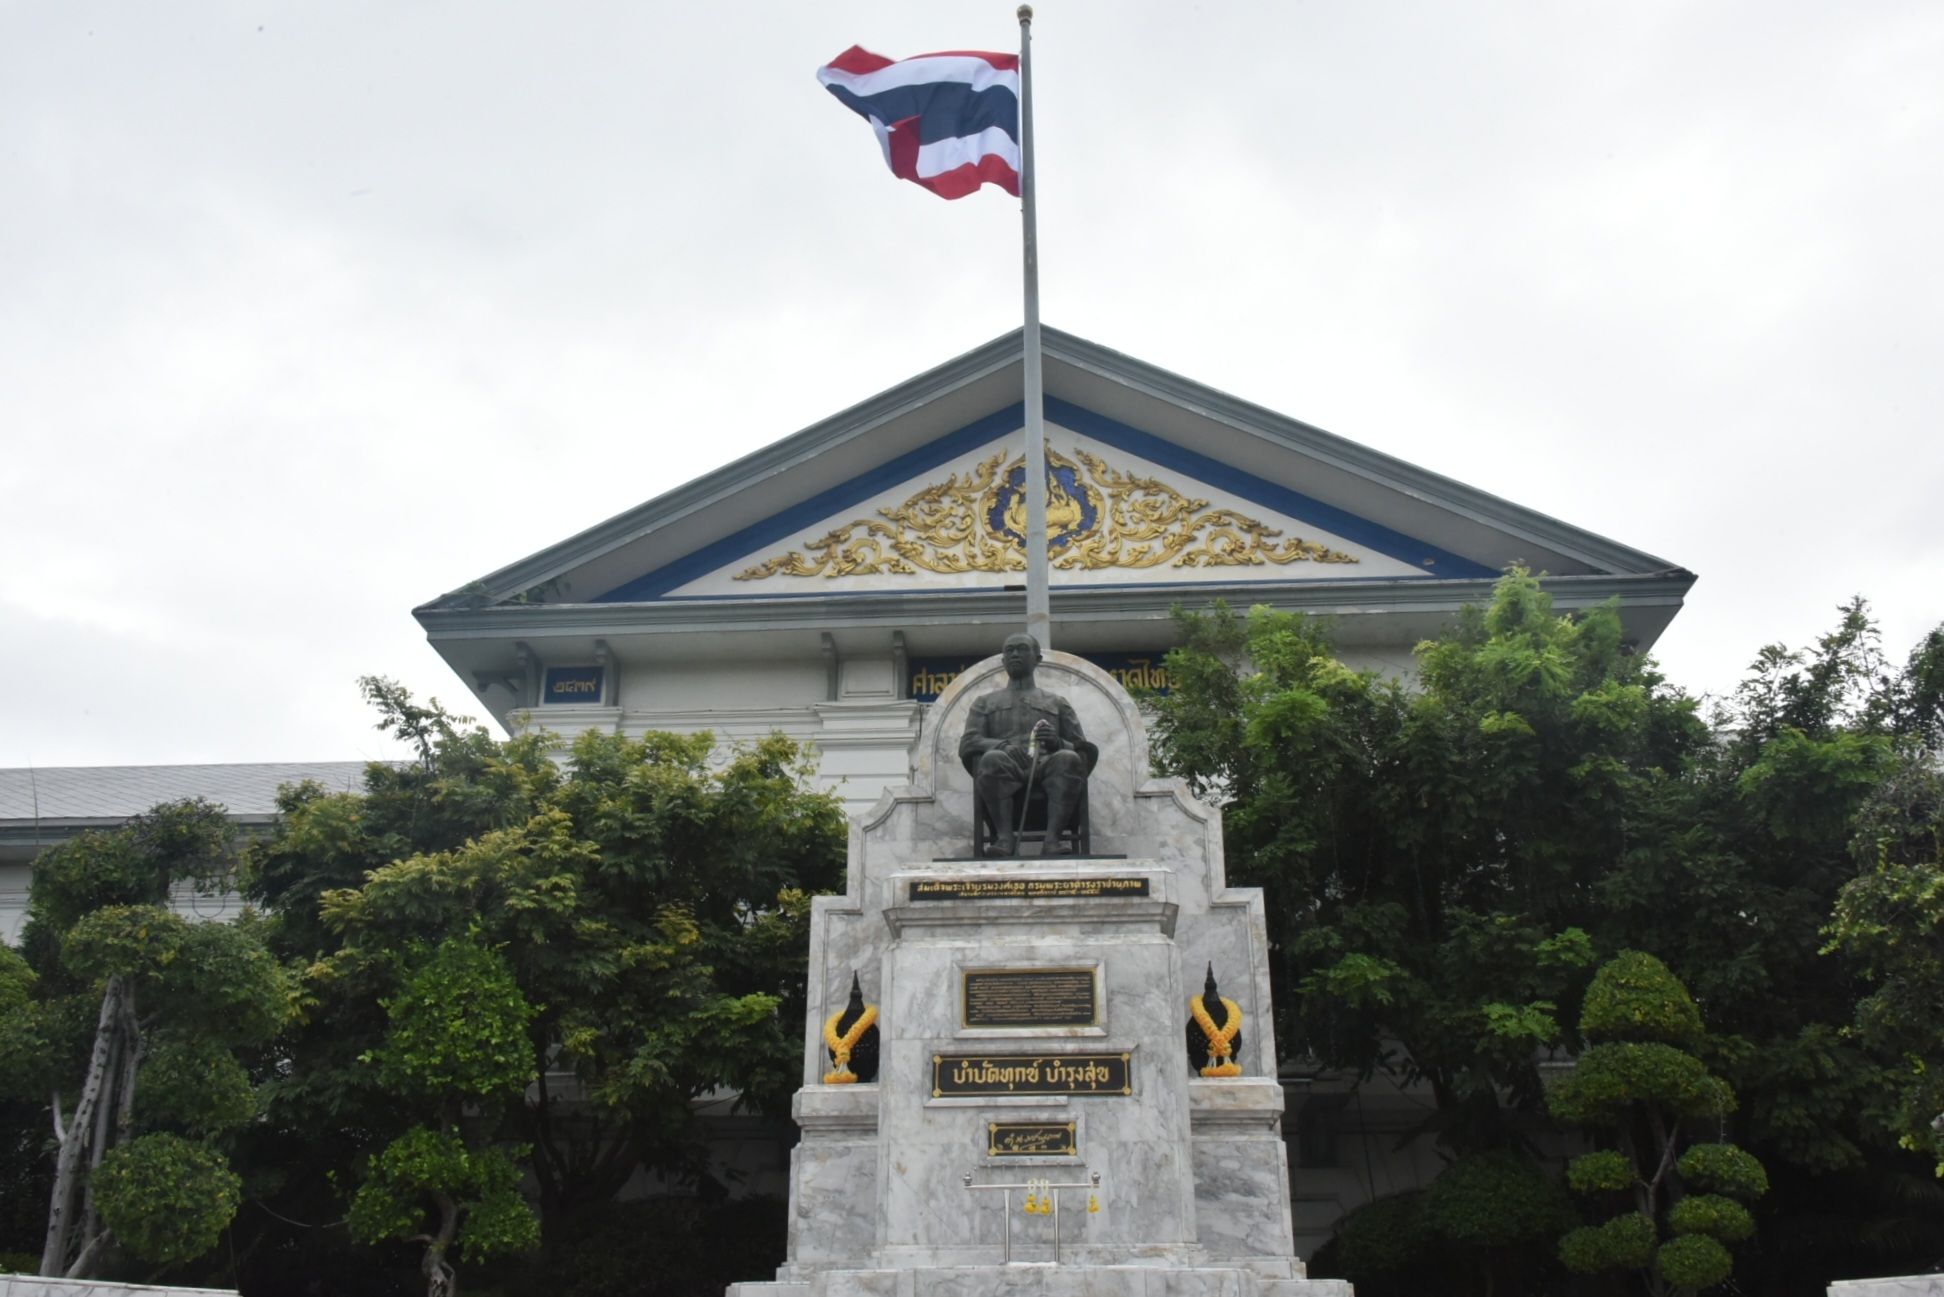 “วันธงชาติไทย” ปลัดมหาดไทยนำข้าราชการแสดงพลังความรู้รักสามัคคี ร่วมขับร้องเพลงชาติไทย เนื่องในวันพระราชทานธงชาติไทย 28 กันยายน 2566